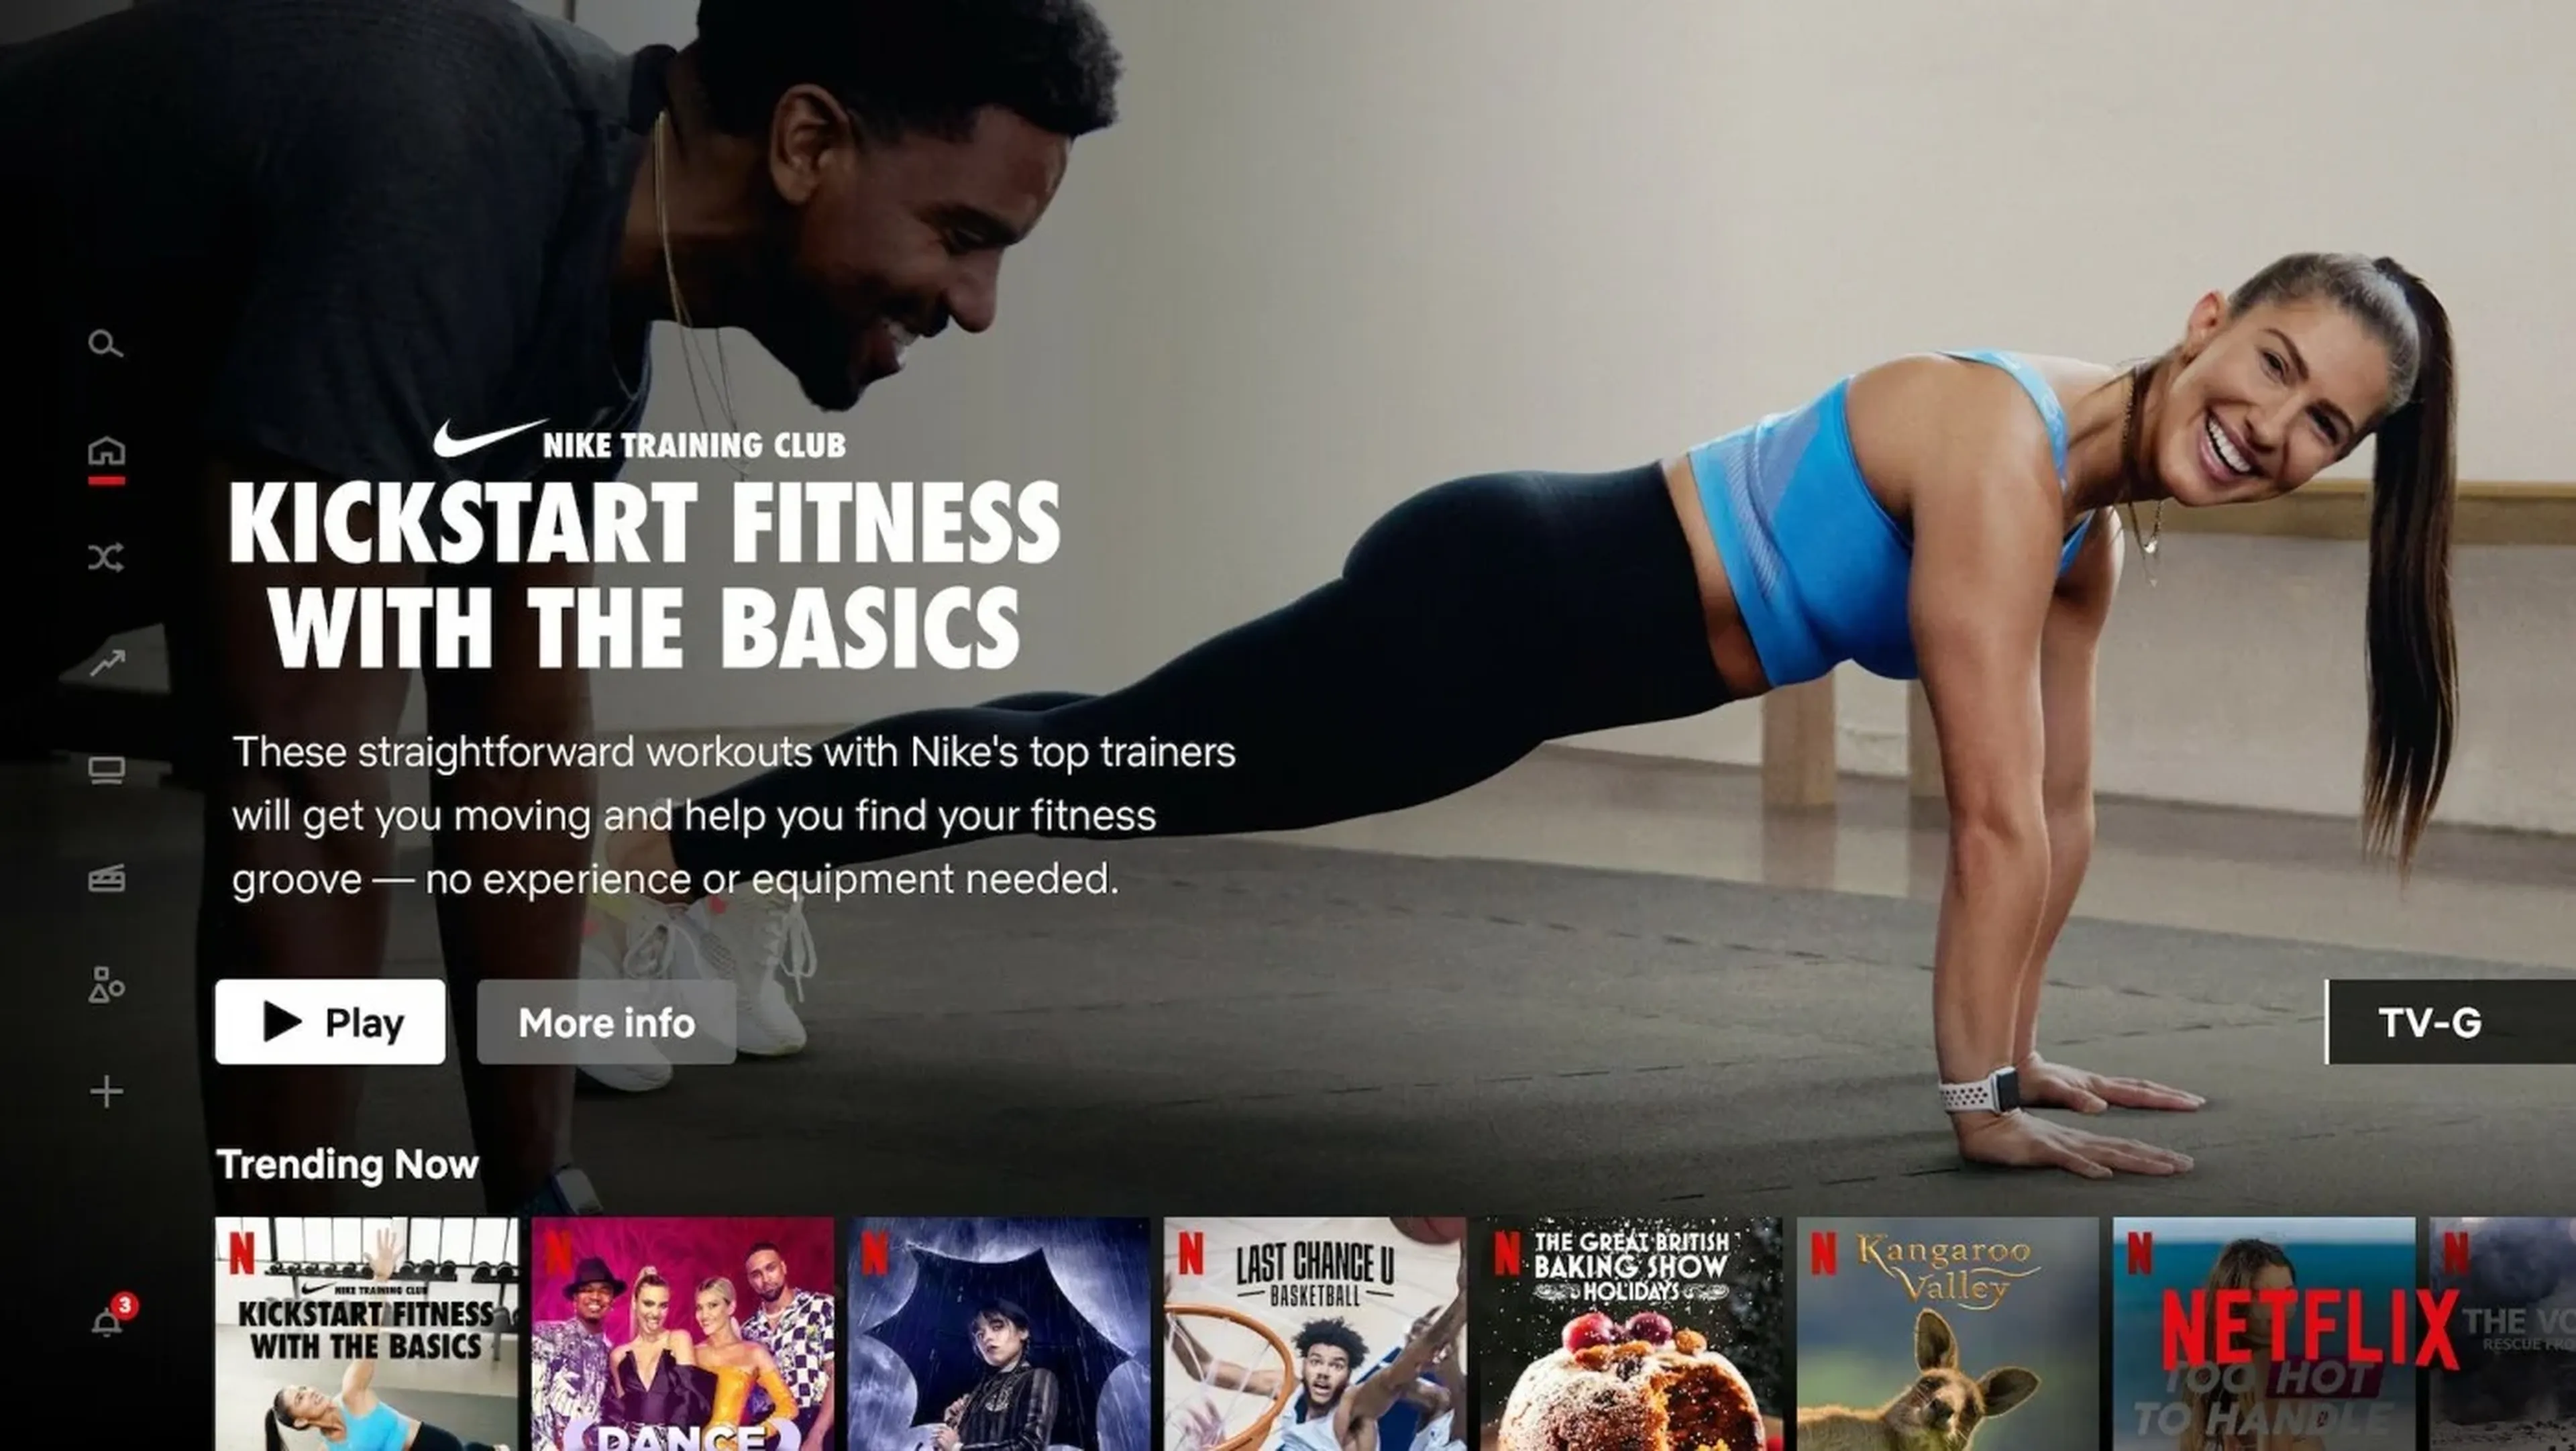 Netflix alía Nike para lanzar entrenamientos caseros gratuitos: así Computer Hoy